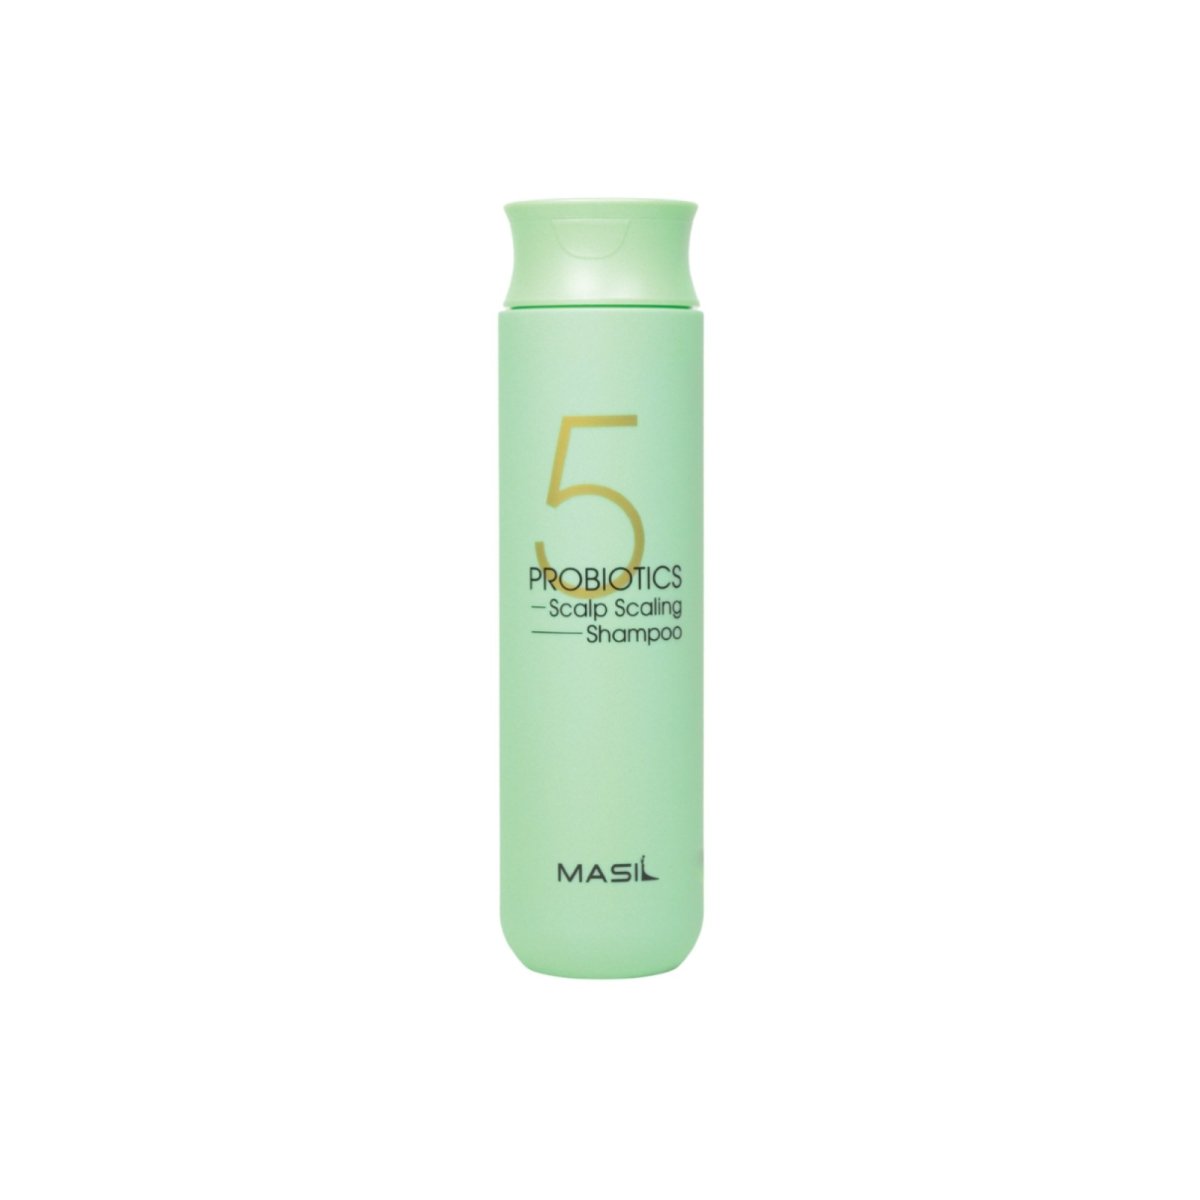 [MASIL] Shampoo Protetor Couro Cabeludo 5 Probiotics Scalp Scaling Shampoo 300ml 🇰🇷